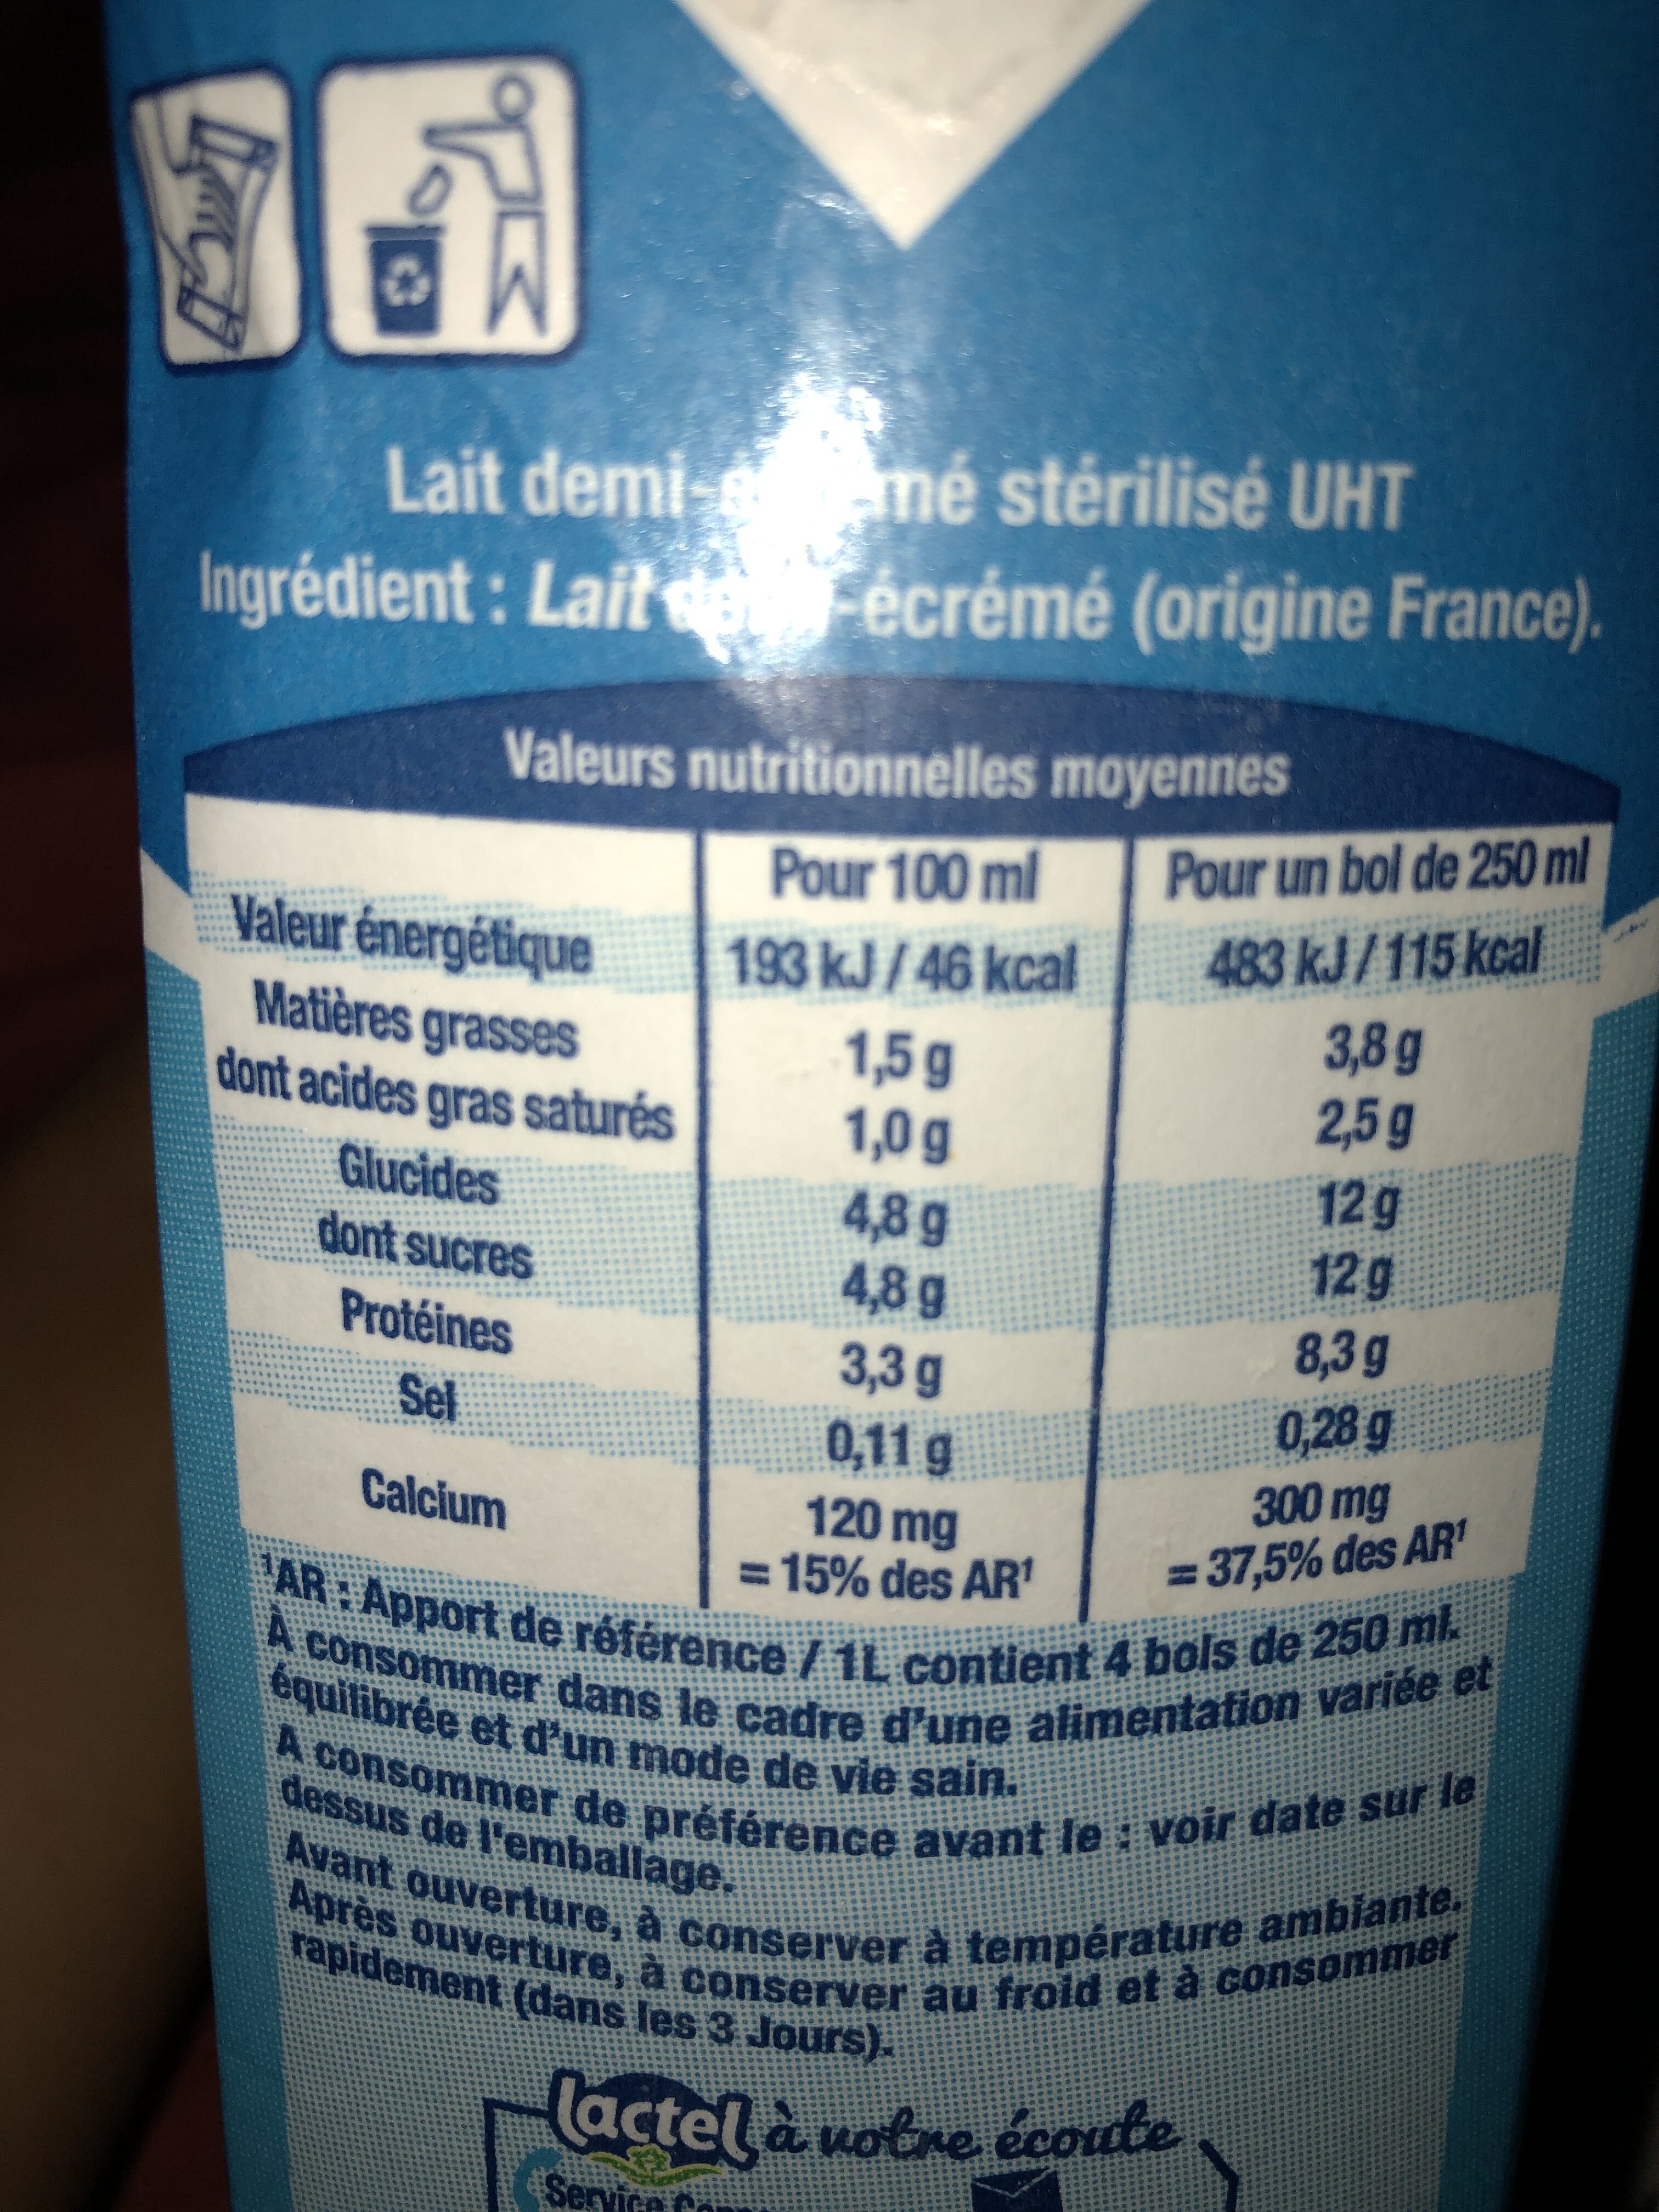 Lait demi écrémé stérilisé UHT - Ingredients - fr